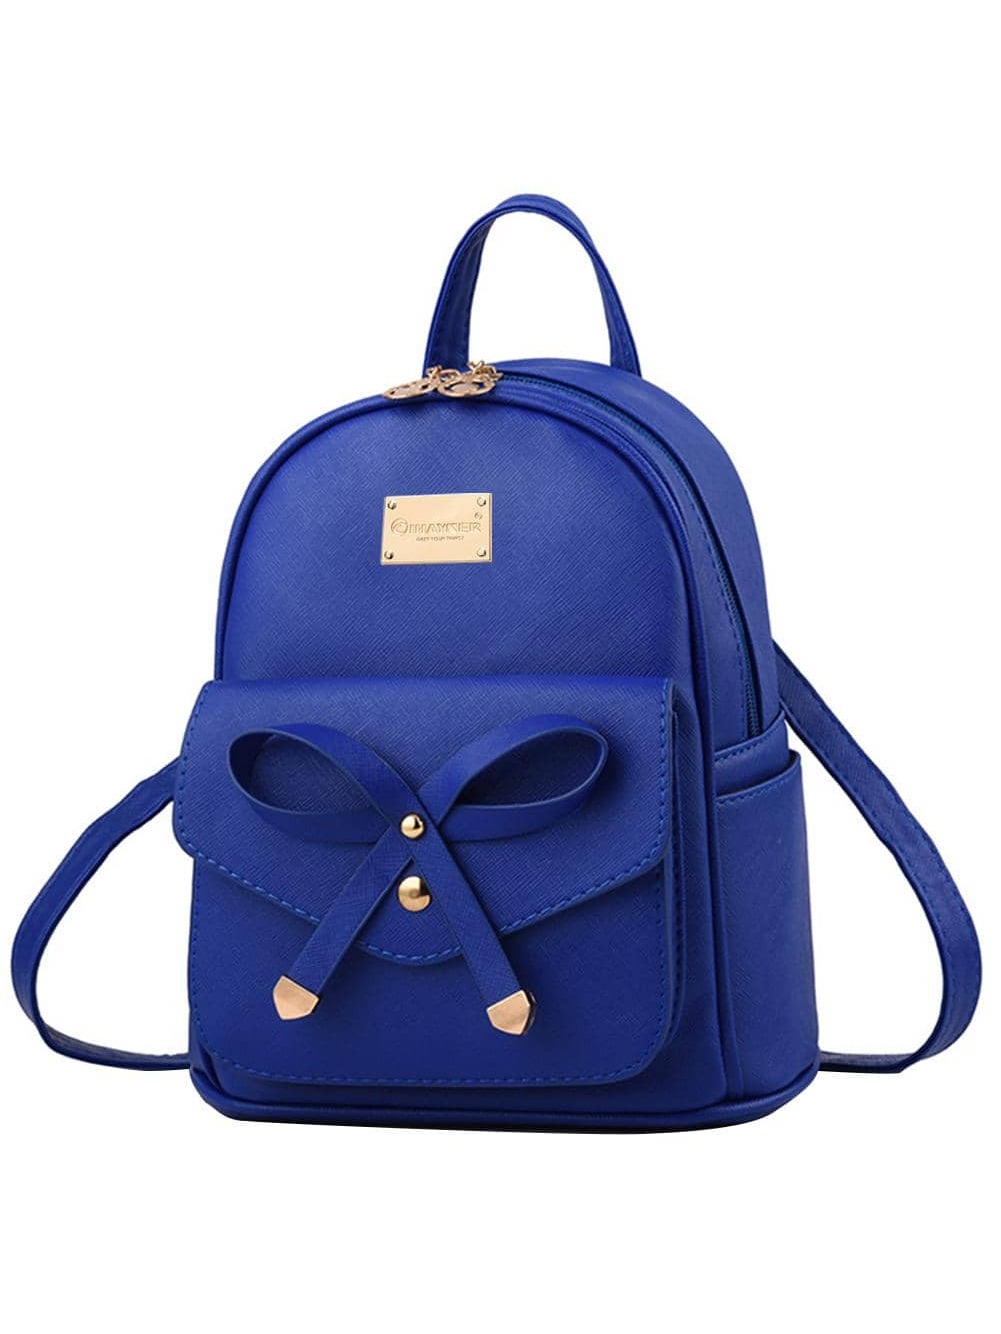 I IHAYNER, королевский синий роскошный кожаный треугольный рюкзак для отдыха для мужчин и женщин дорожный кожаный рюкзак подходит для ipad маленький портативный мужско